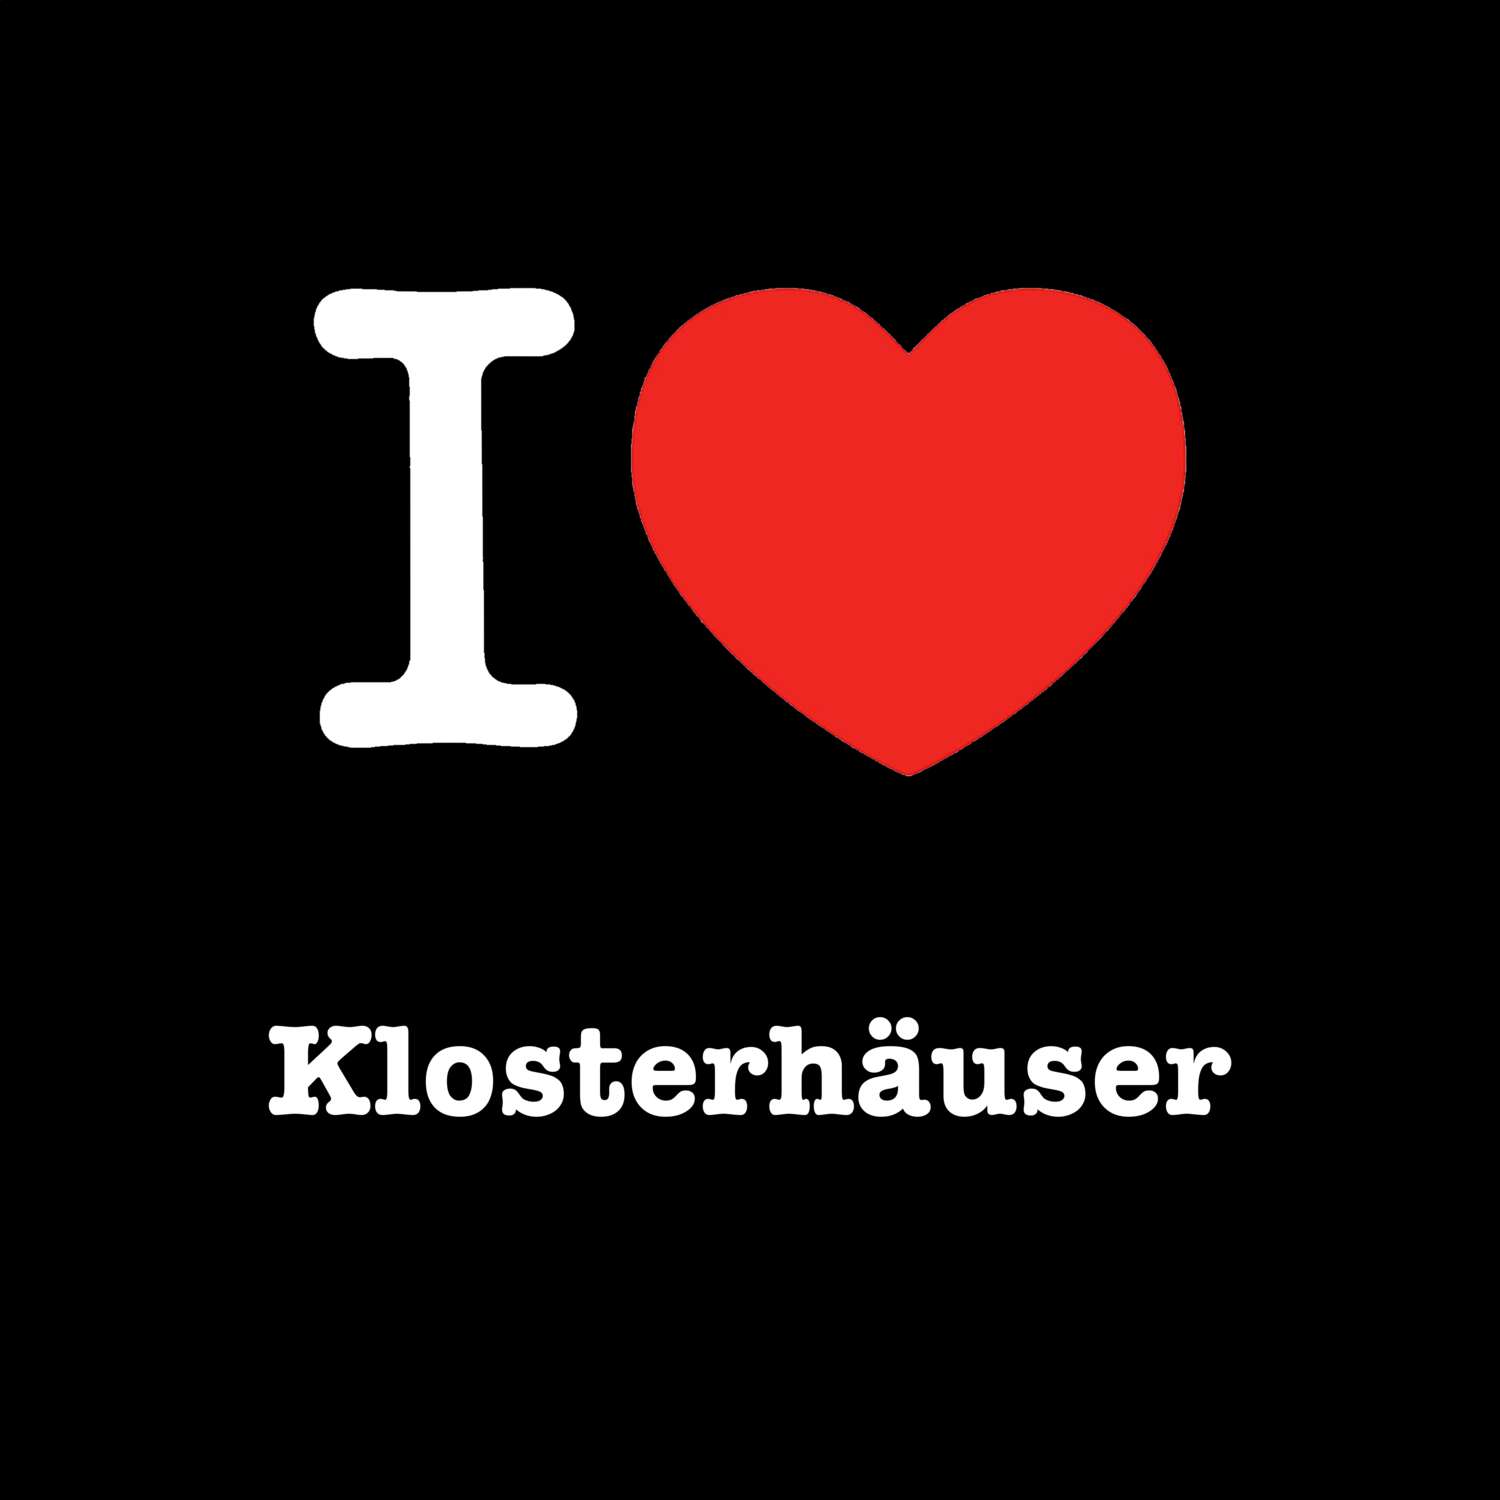 Klosterhäuser T-Shirt »I love«